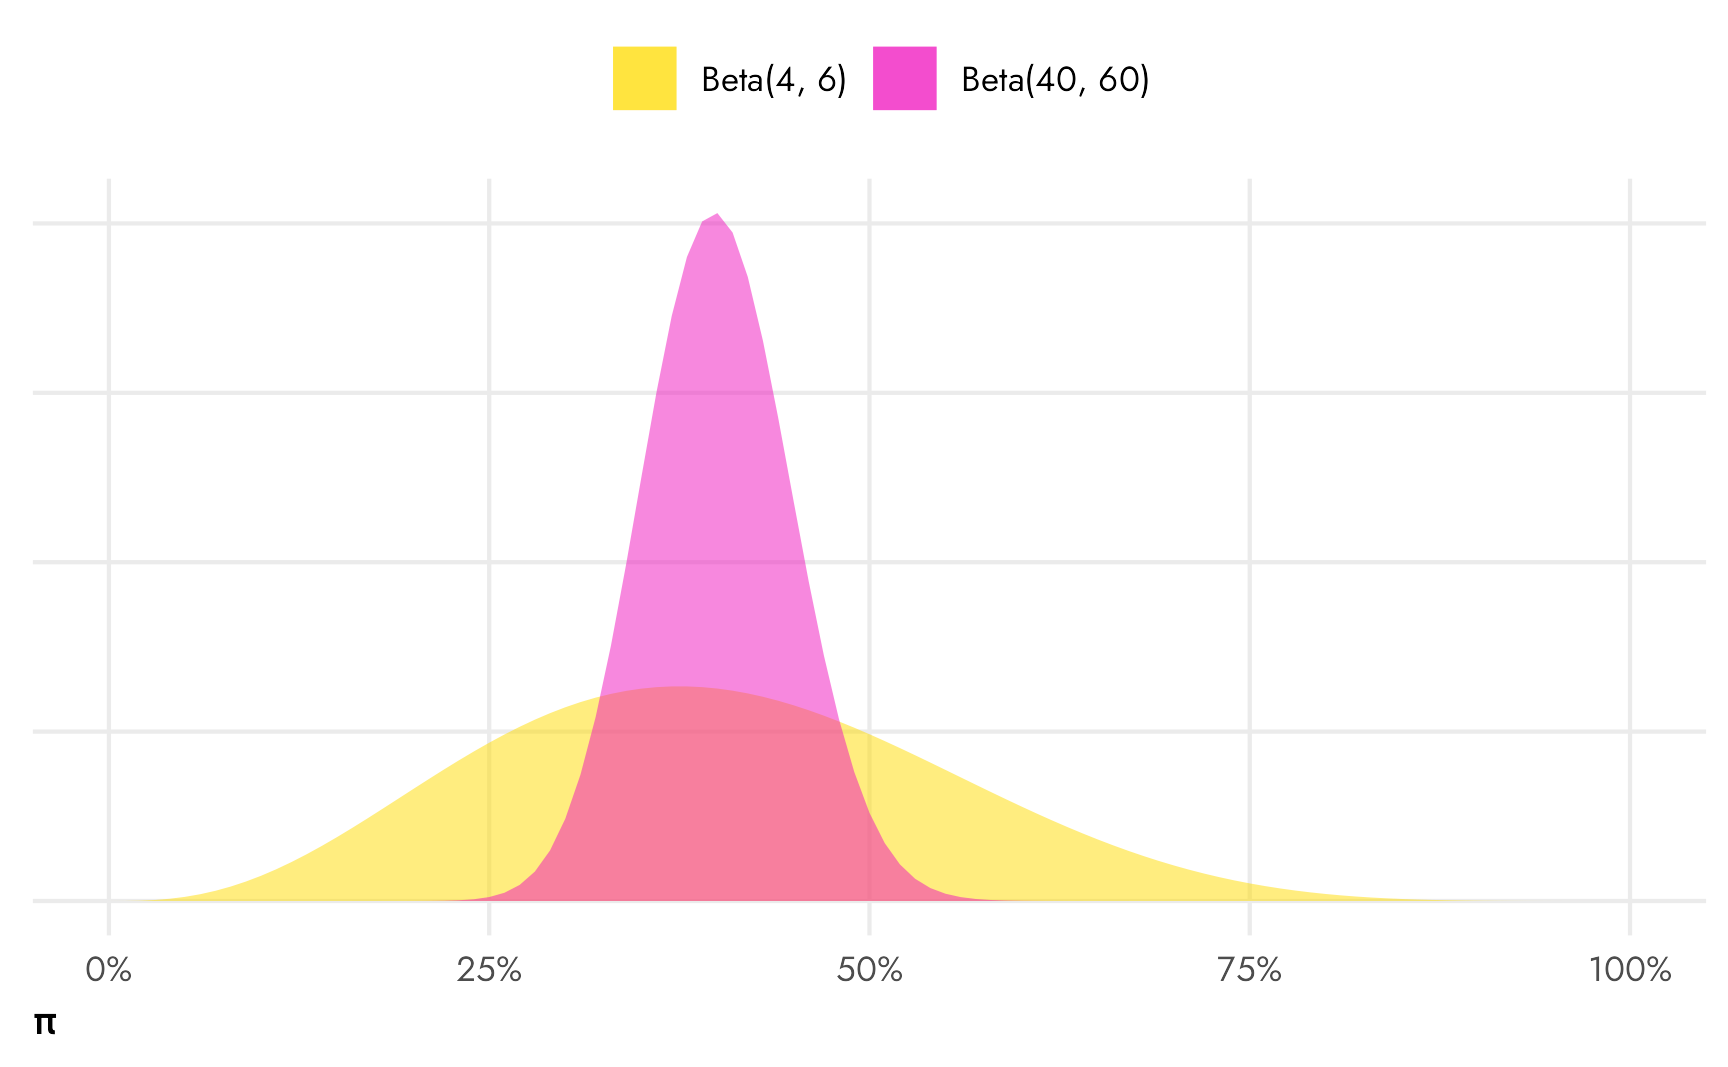 Beta(4, 6) and Beta(40, 60) distributions